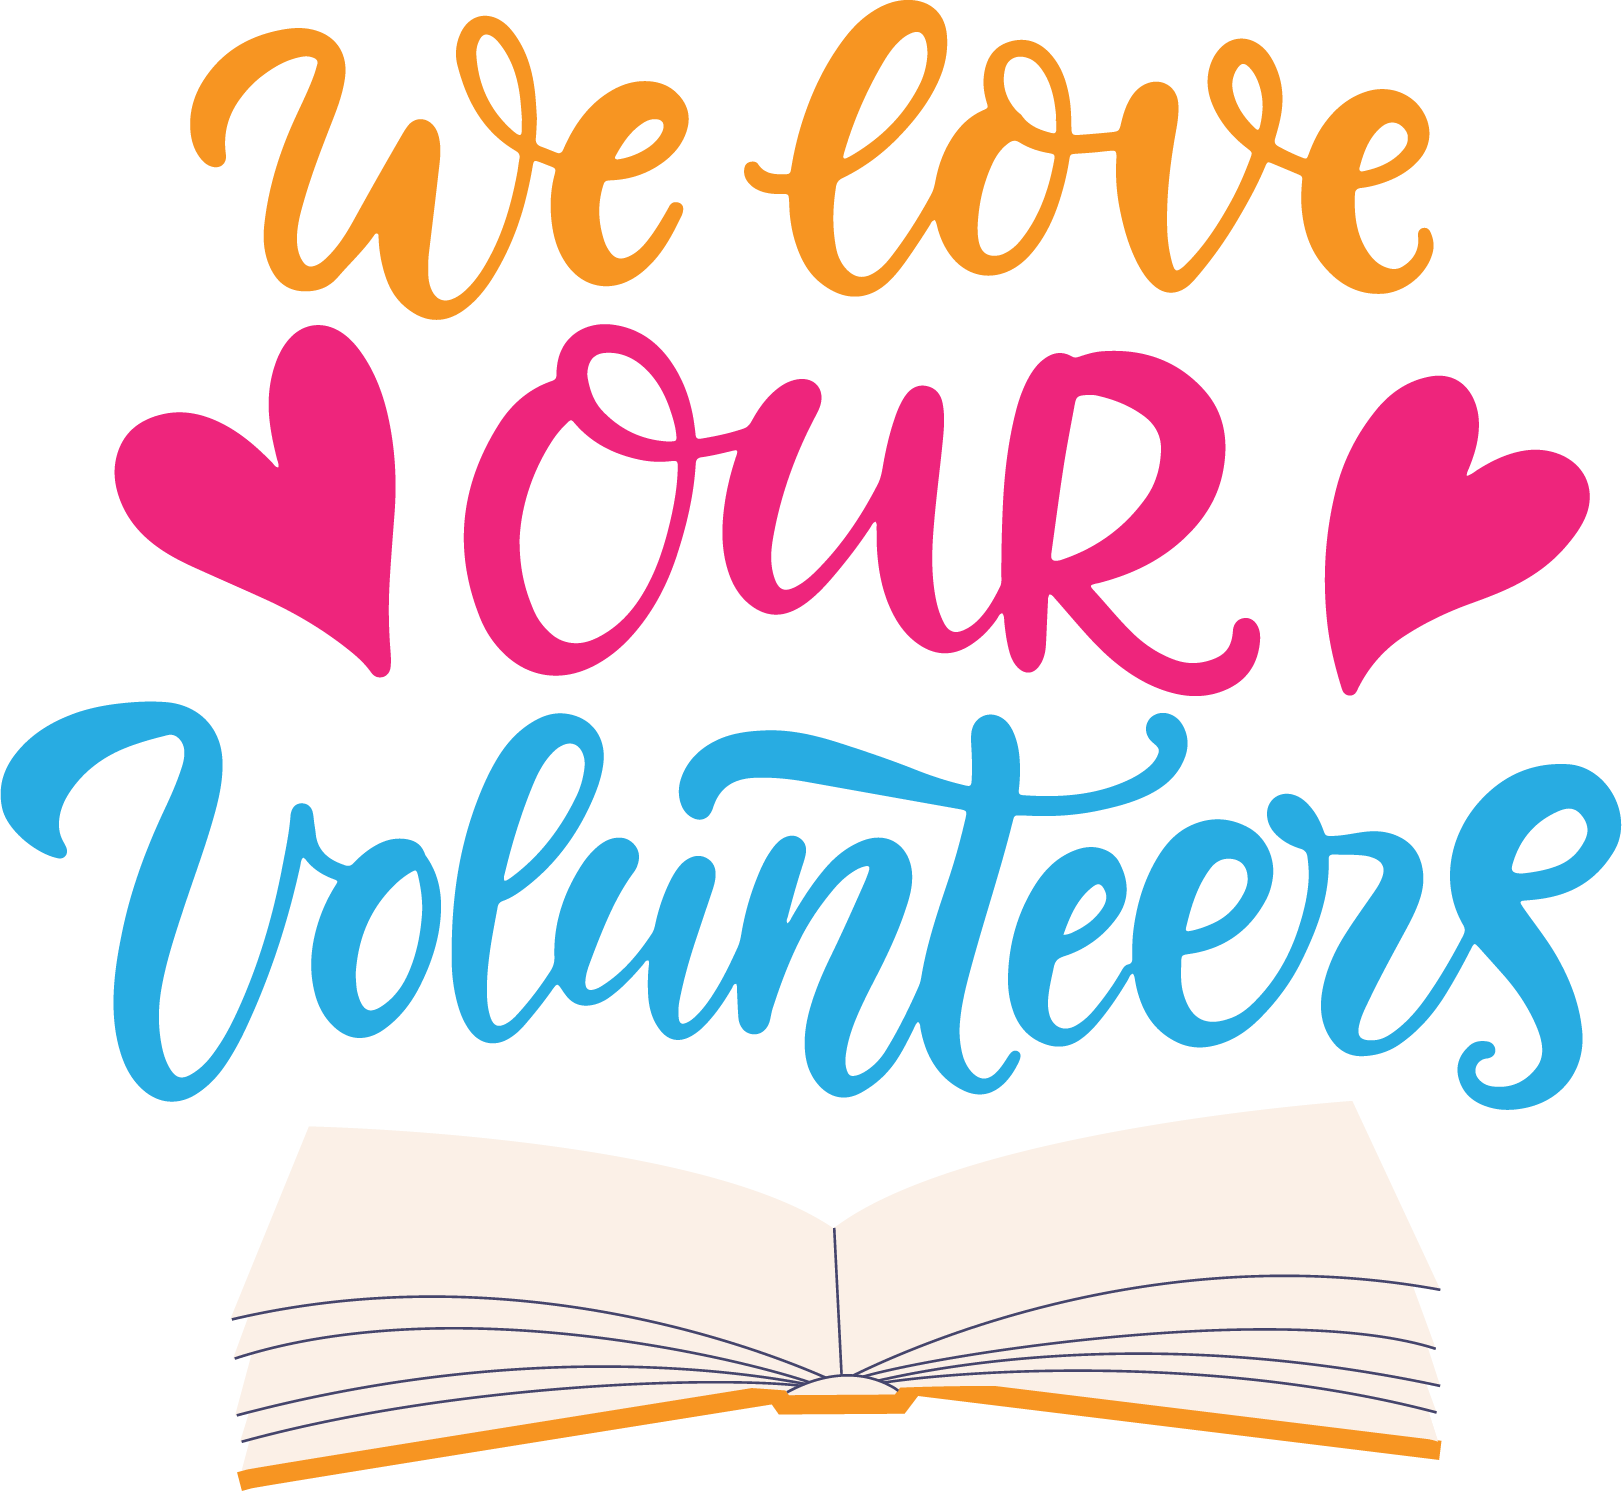 We love our Volunteers!